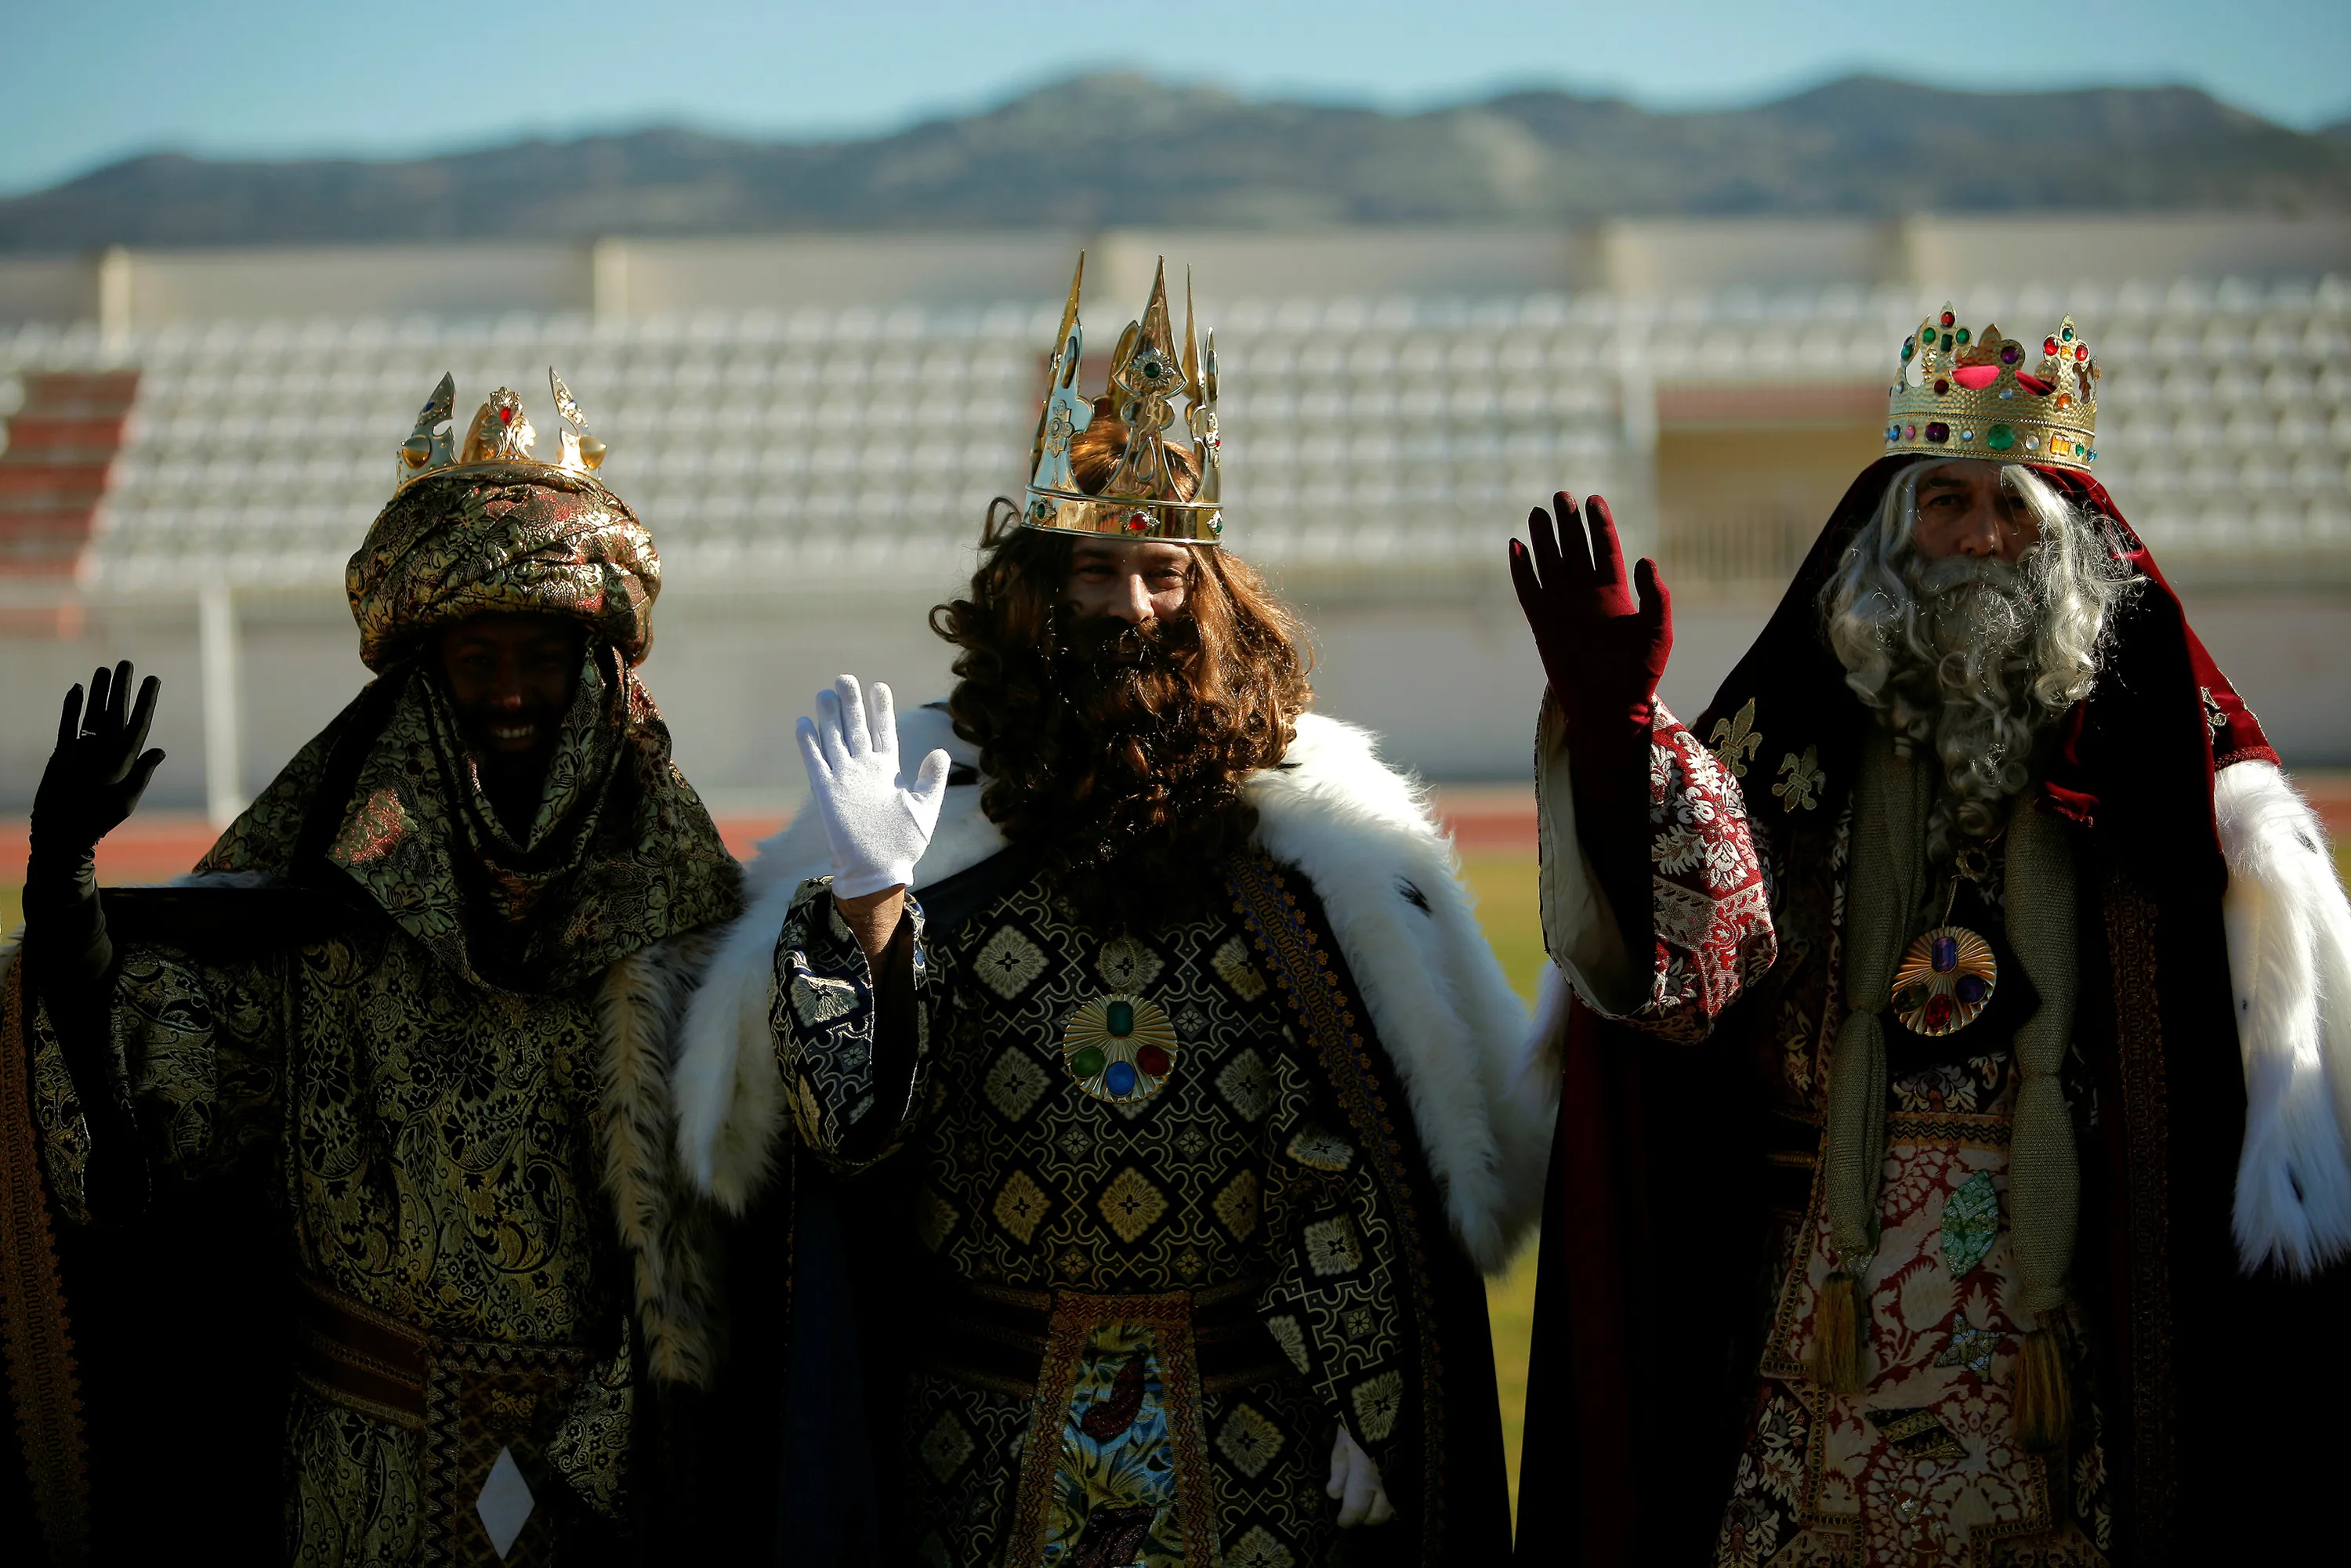 Будет три короля. Богоявление три короля. Праздник трёх королей в Германии. День трех королей в Испании. День трех святых королей.